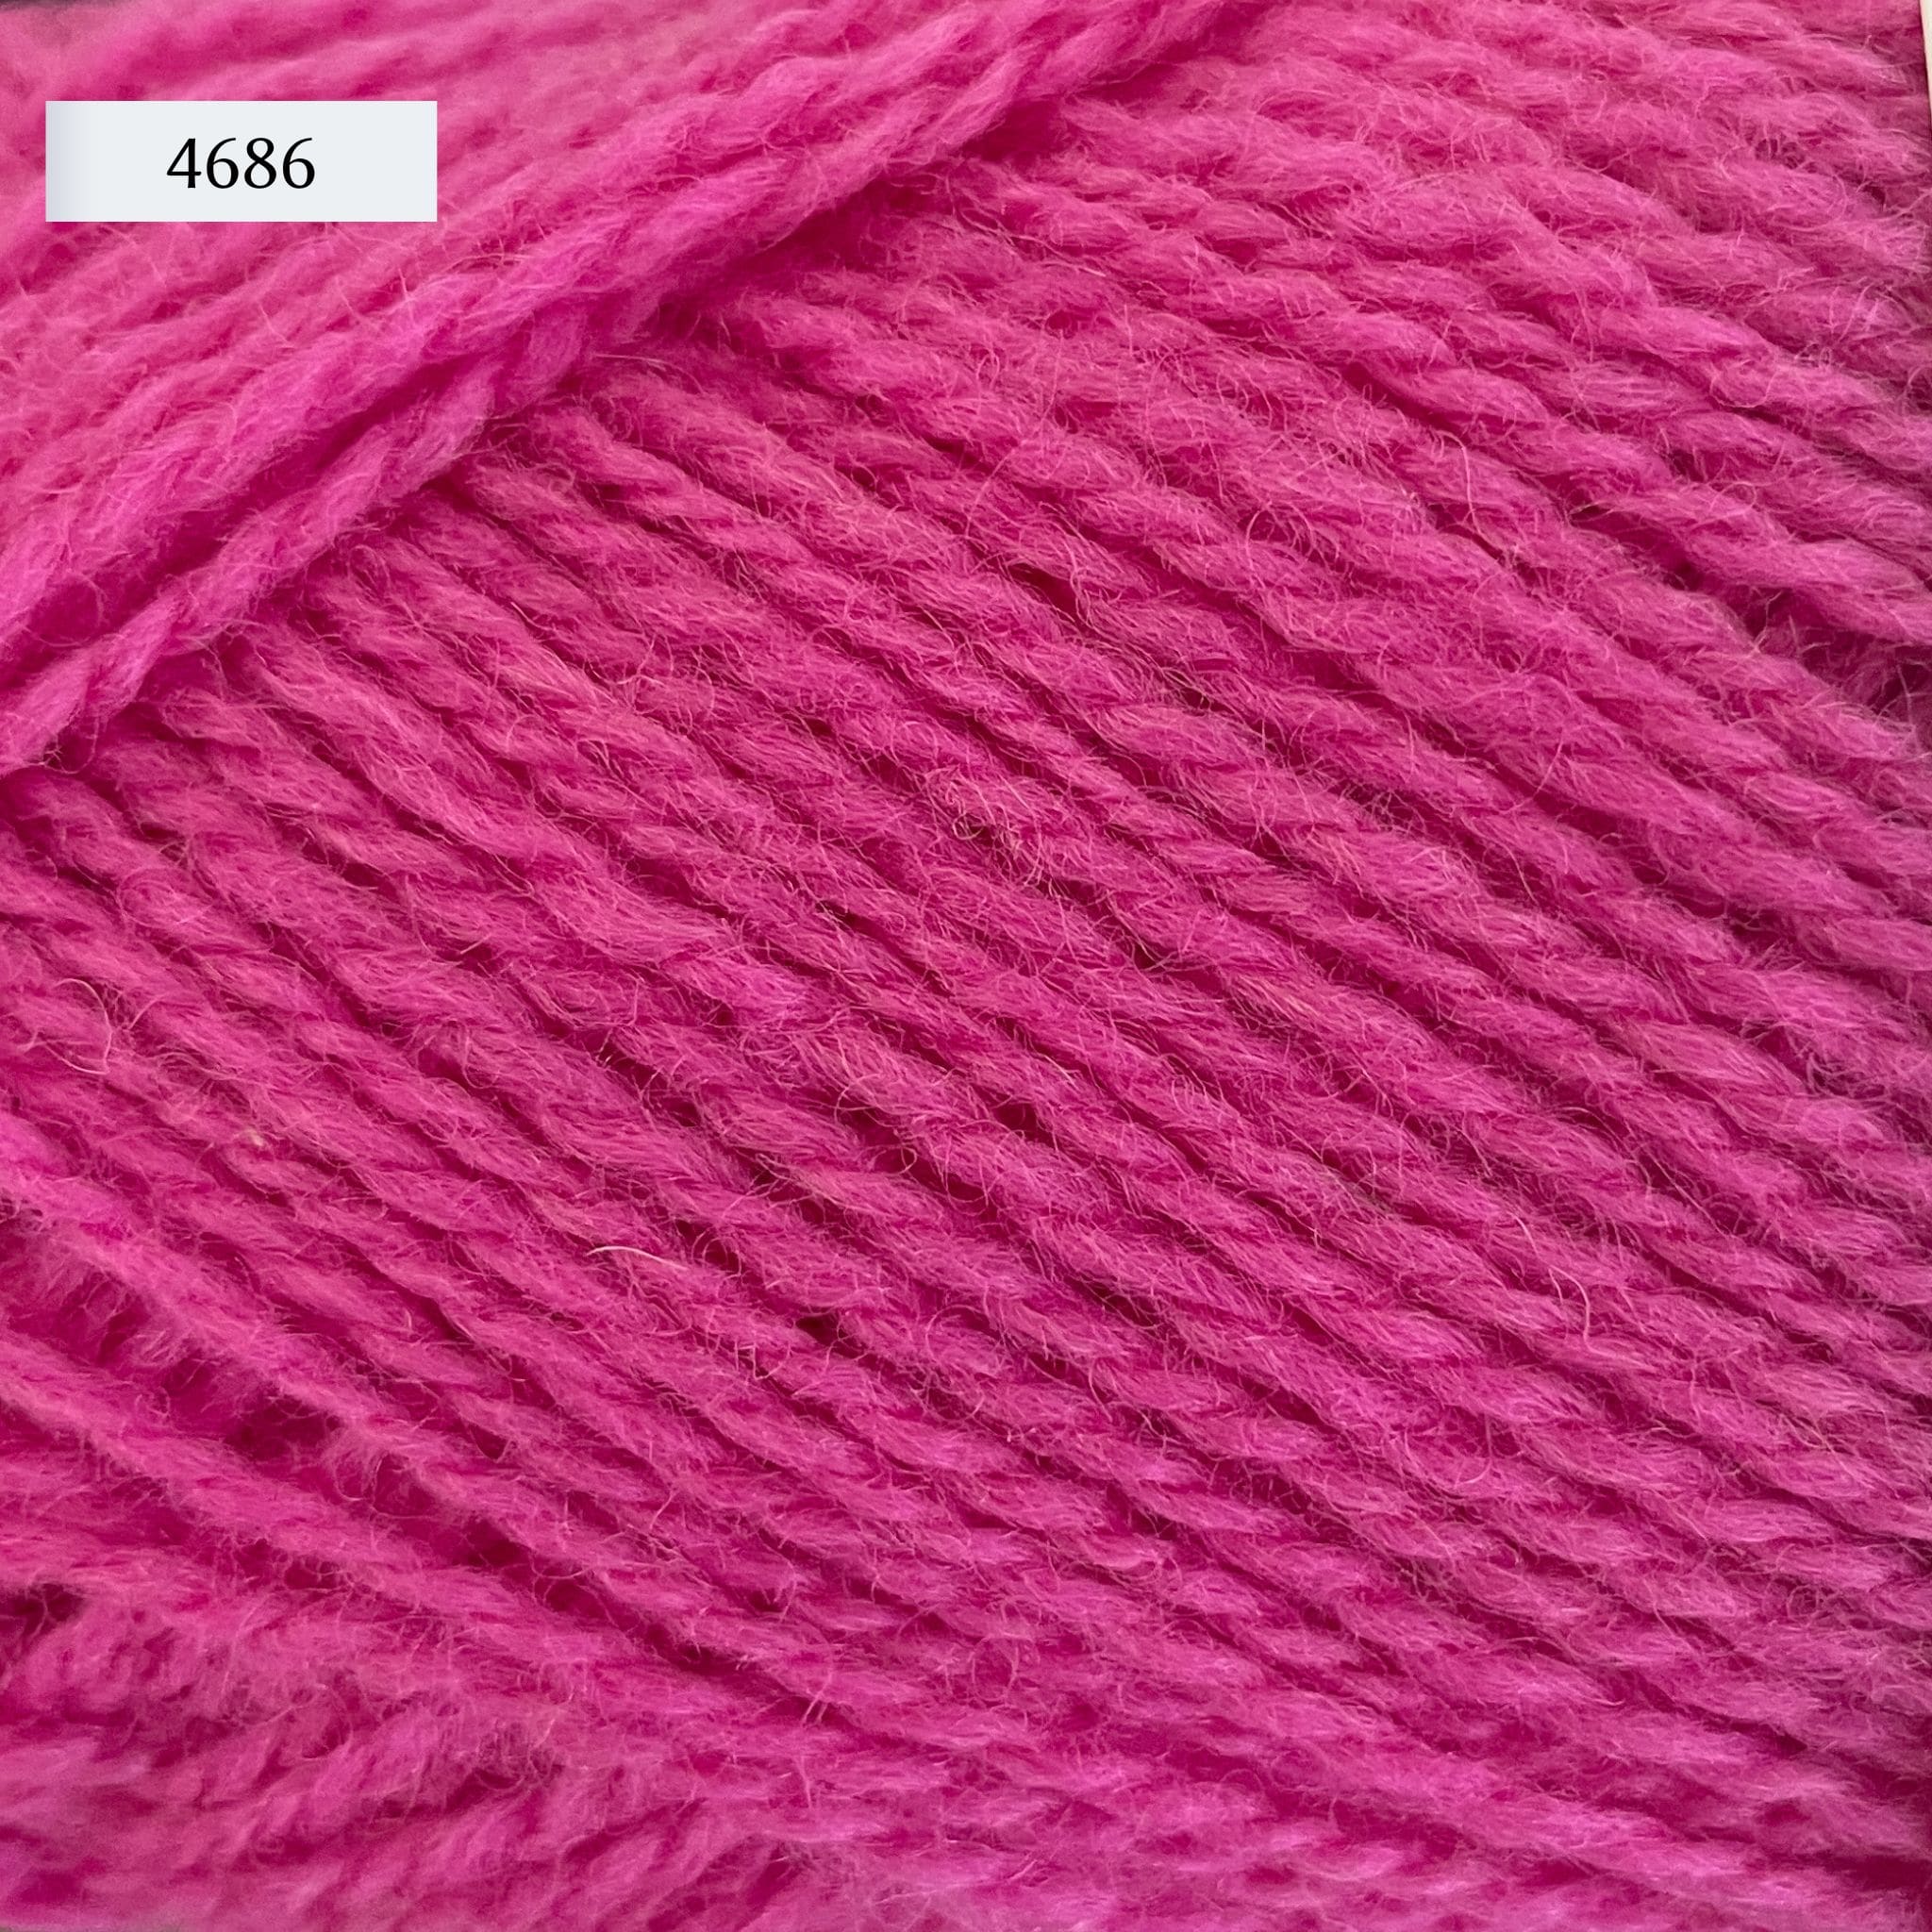 Rauma Finullgarn, a fingering/sport weight yarn, in color 4686, a rich bubblegum pink